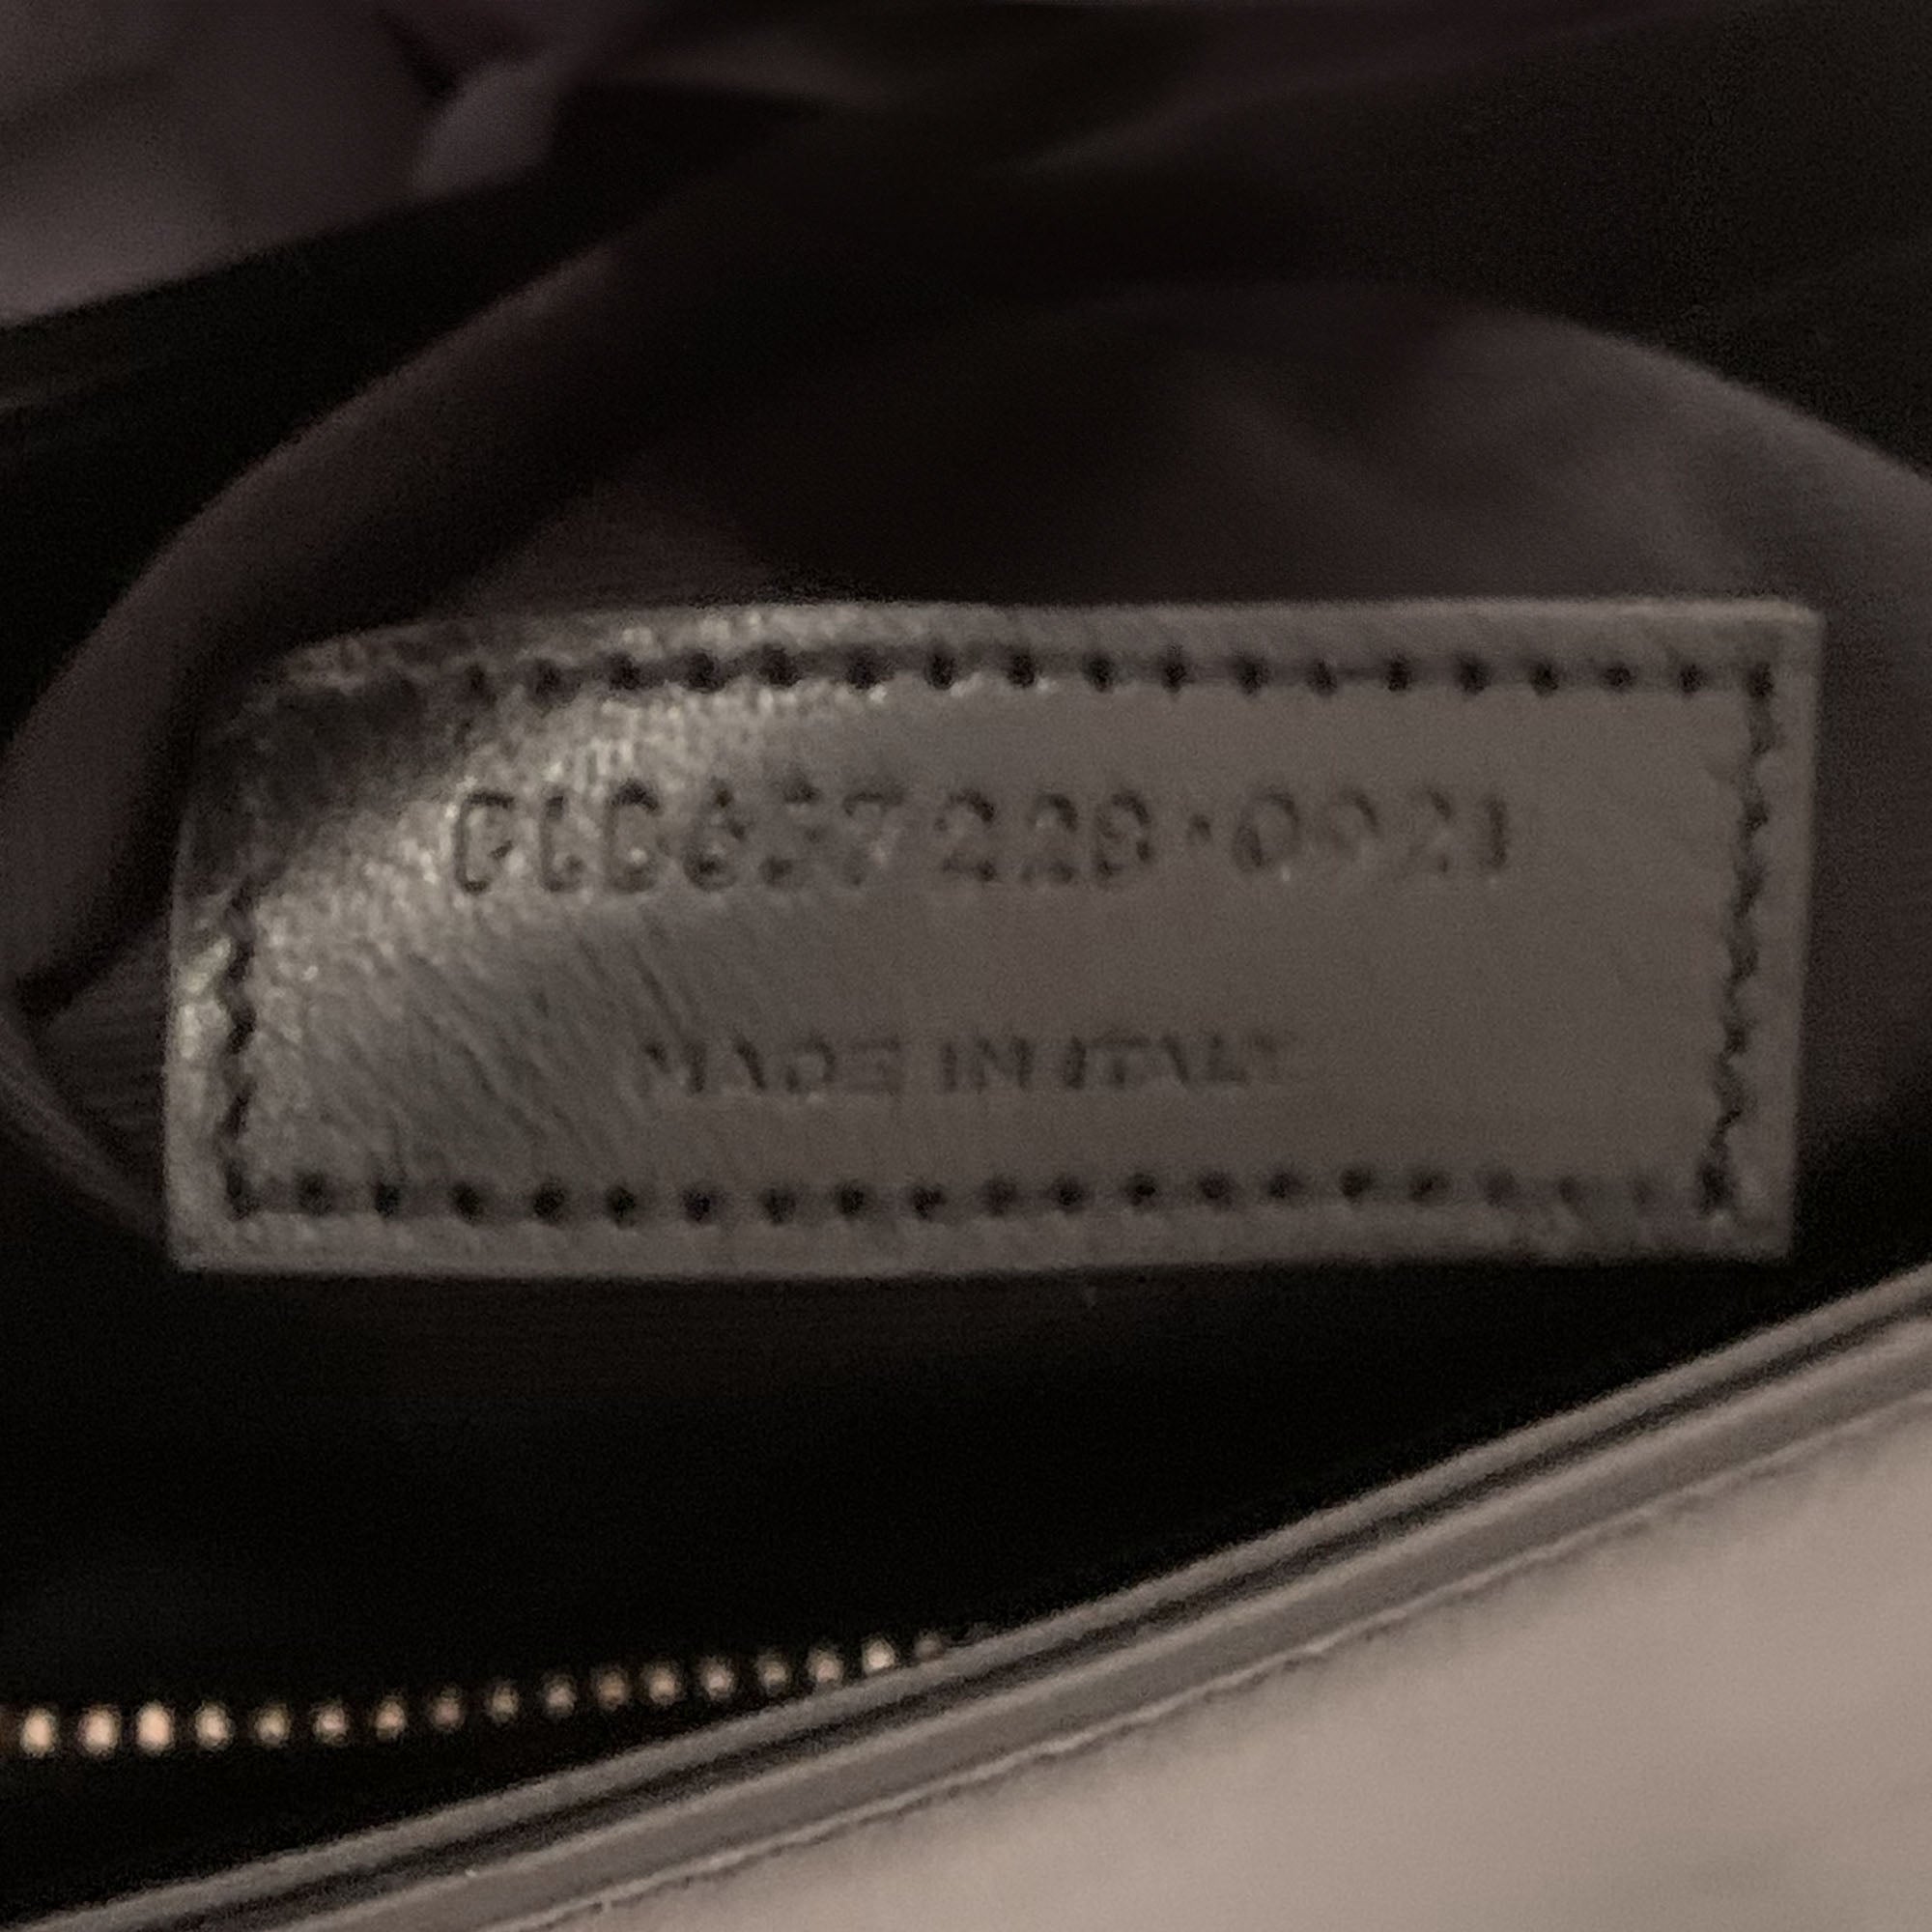 Le 5 Á 7 Shoulder Bag - SAINT LAURENT - Affordable Luxury image